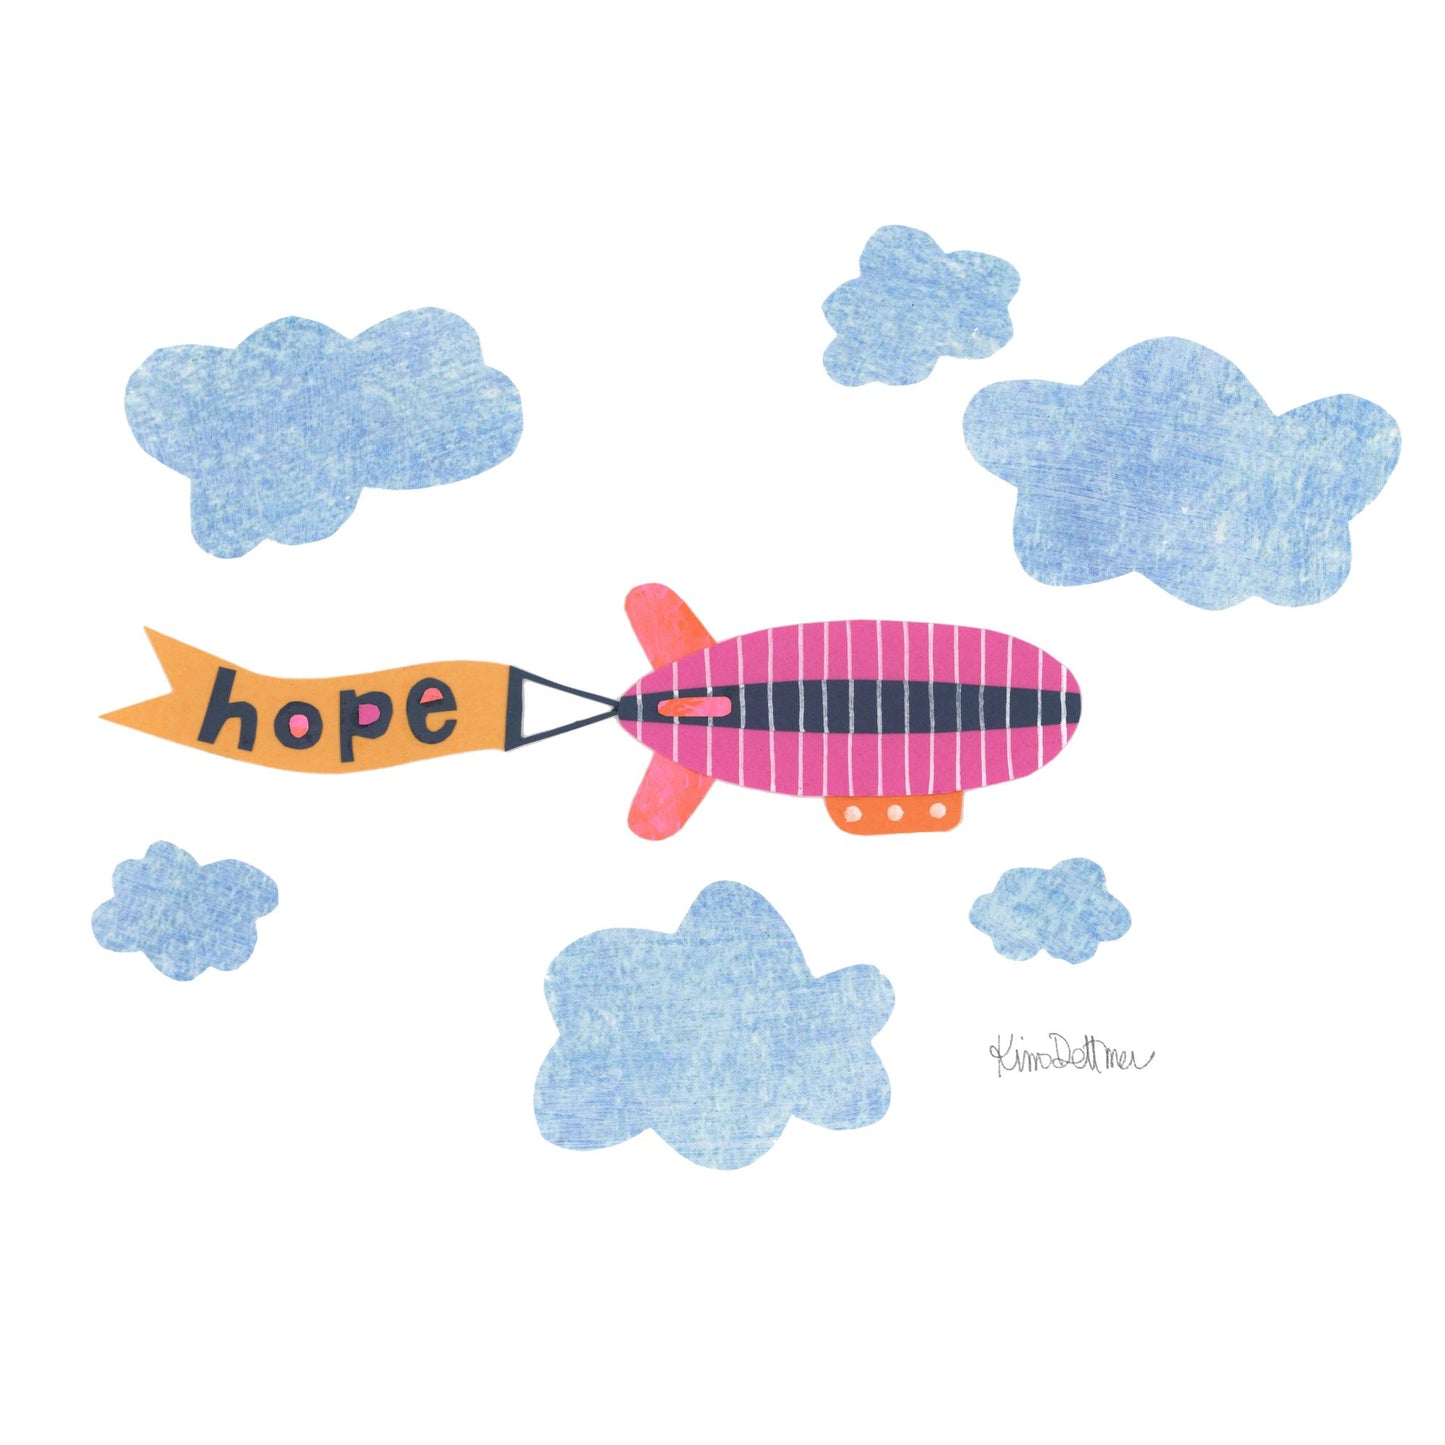 Hope 26 - Hope Blimp (ORIGINAL)